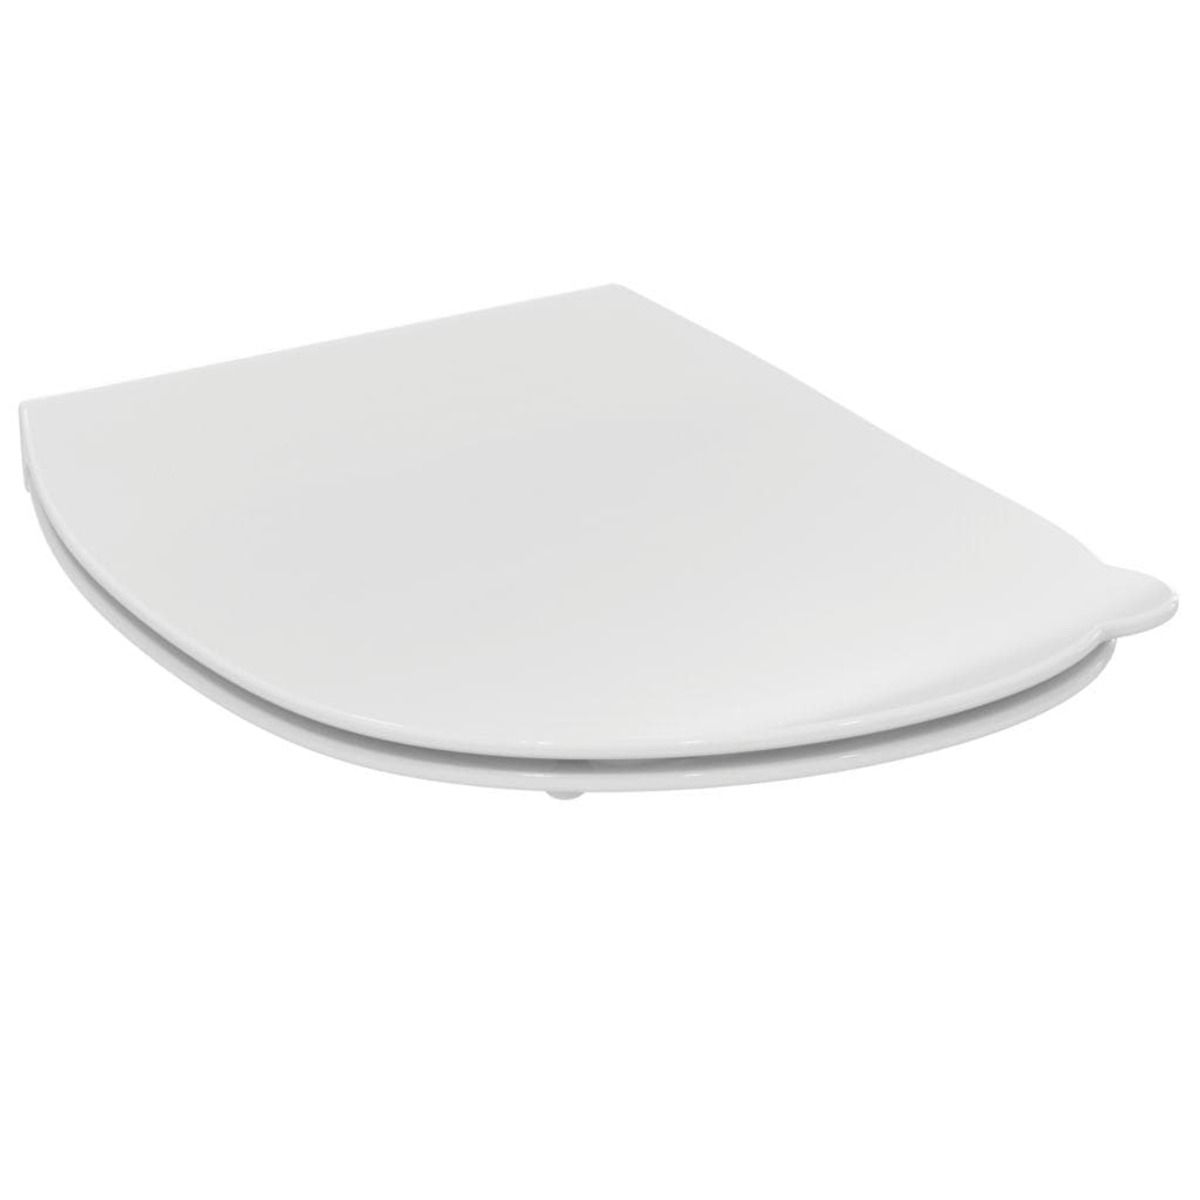 Wc prkénko Ideal Standard Contour 21 duroplast bílá S453601 - Siko - koupelny - kuchyně